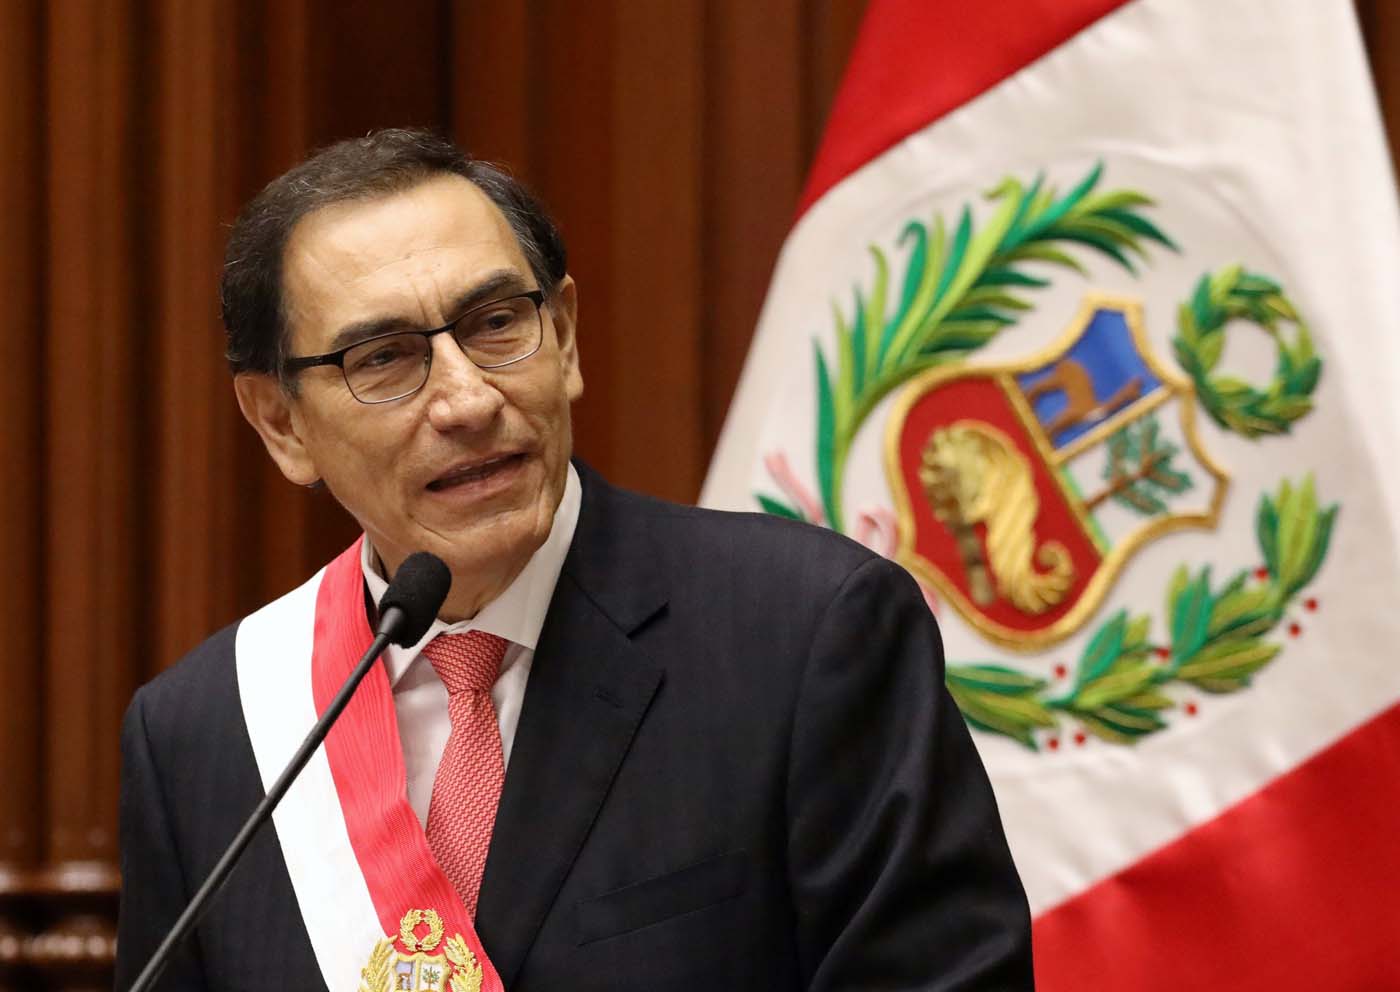 Vizcarra mantiene veto a Maduro en Cumbre de las Américas